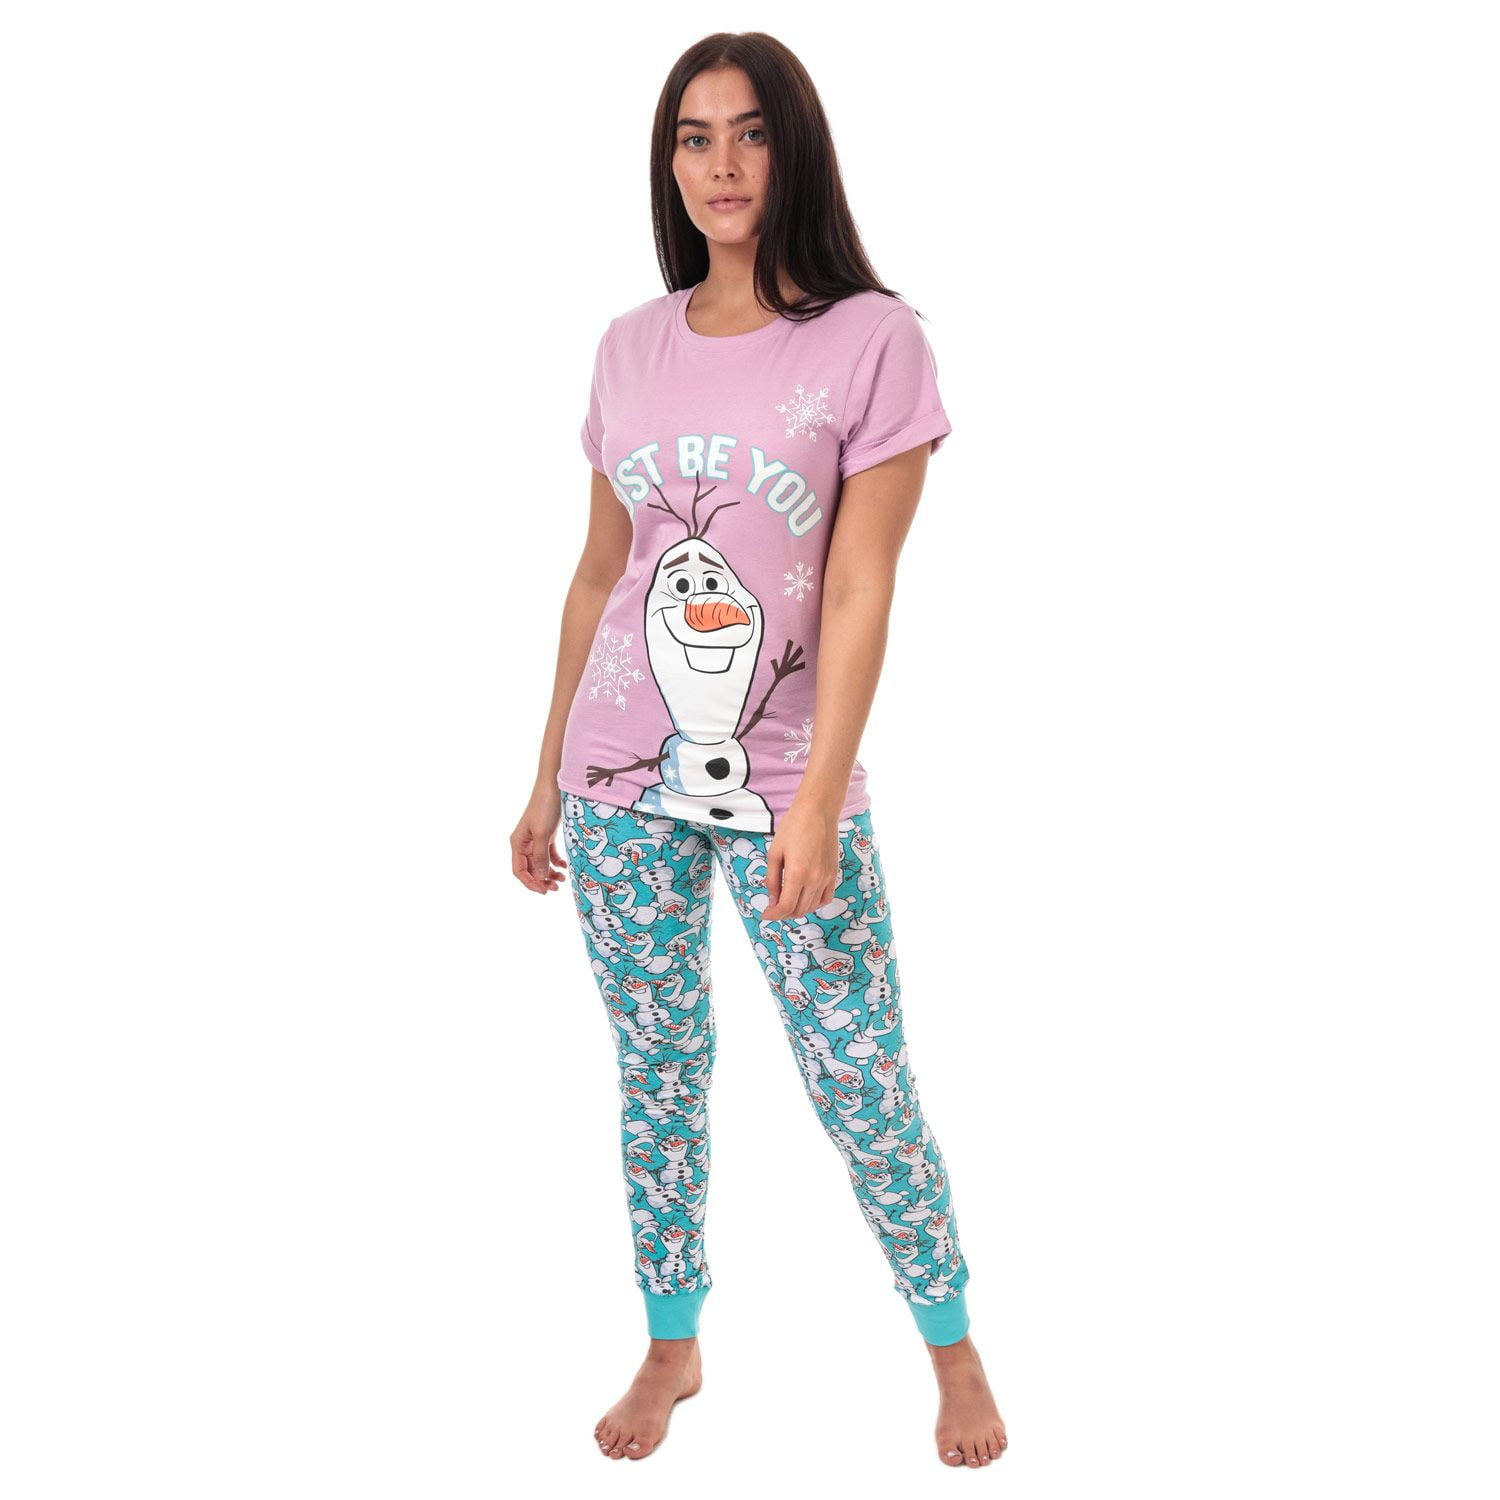 knuffel Bergbeklimmer Weggegooid Women's Disney Frozen Olaf Pyjamas in Purple - Walmart.com